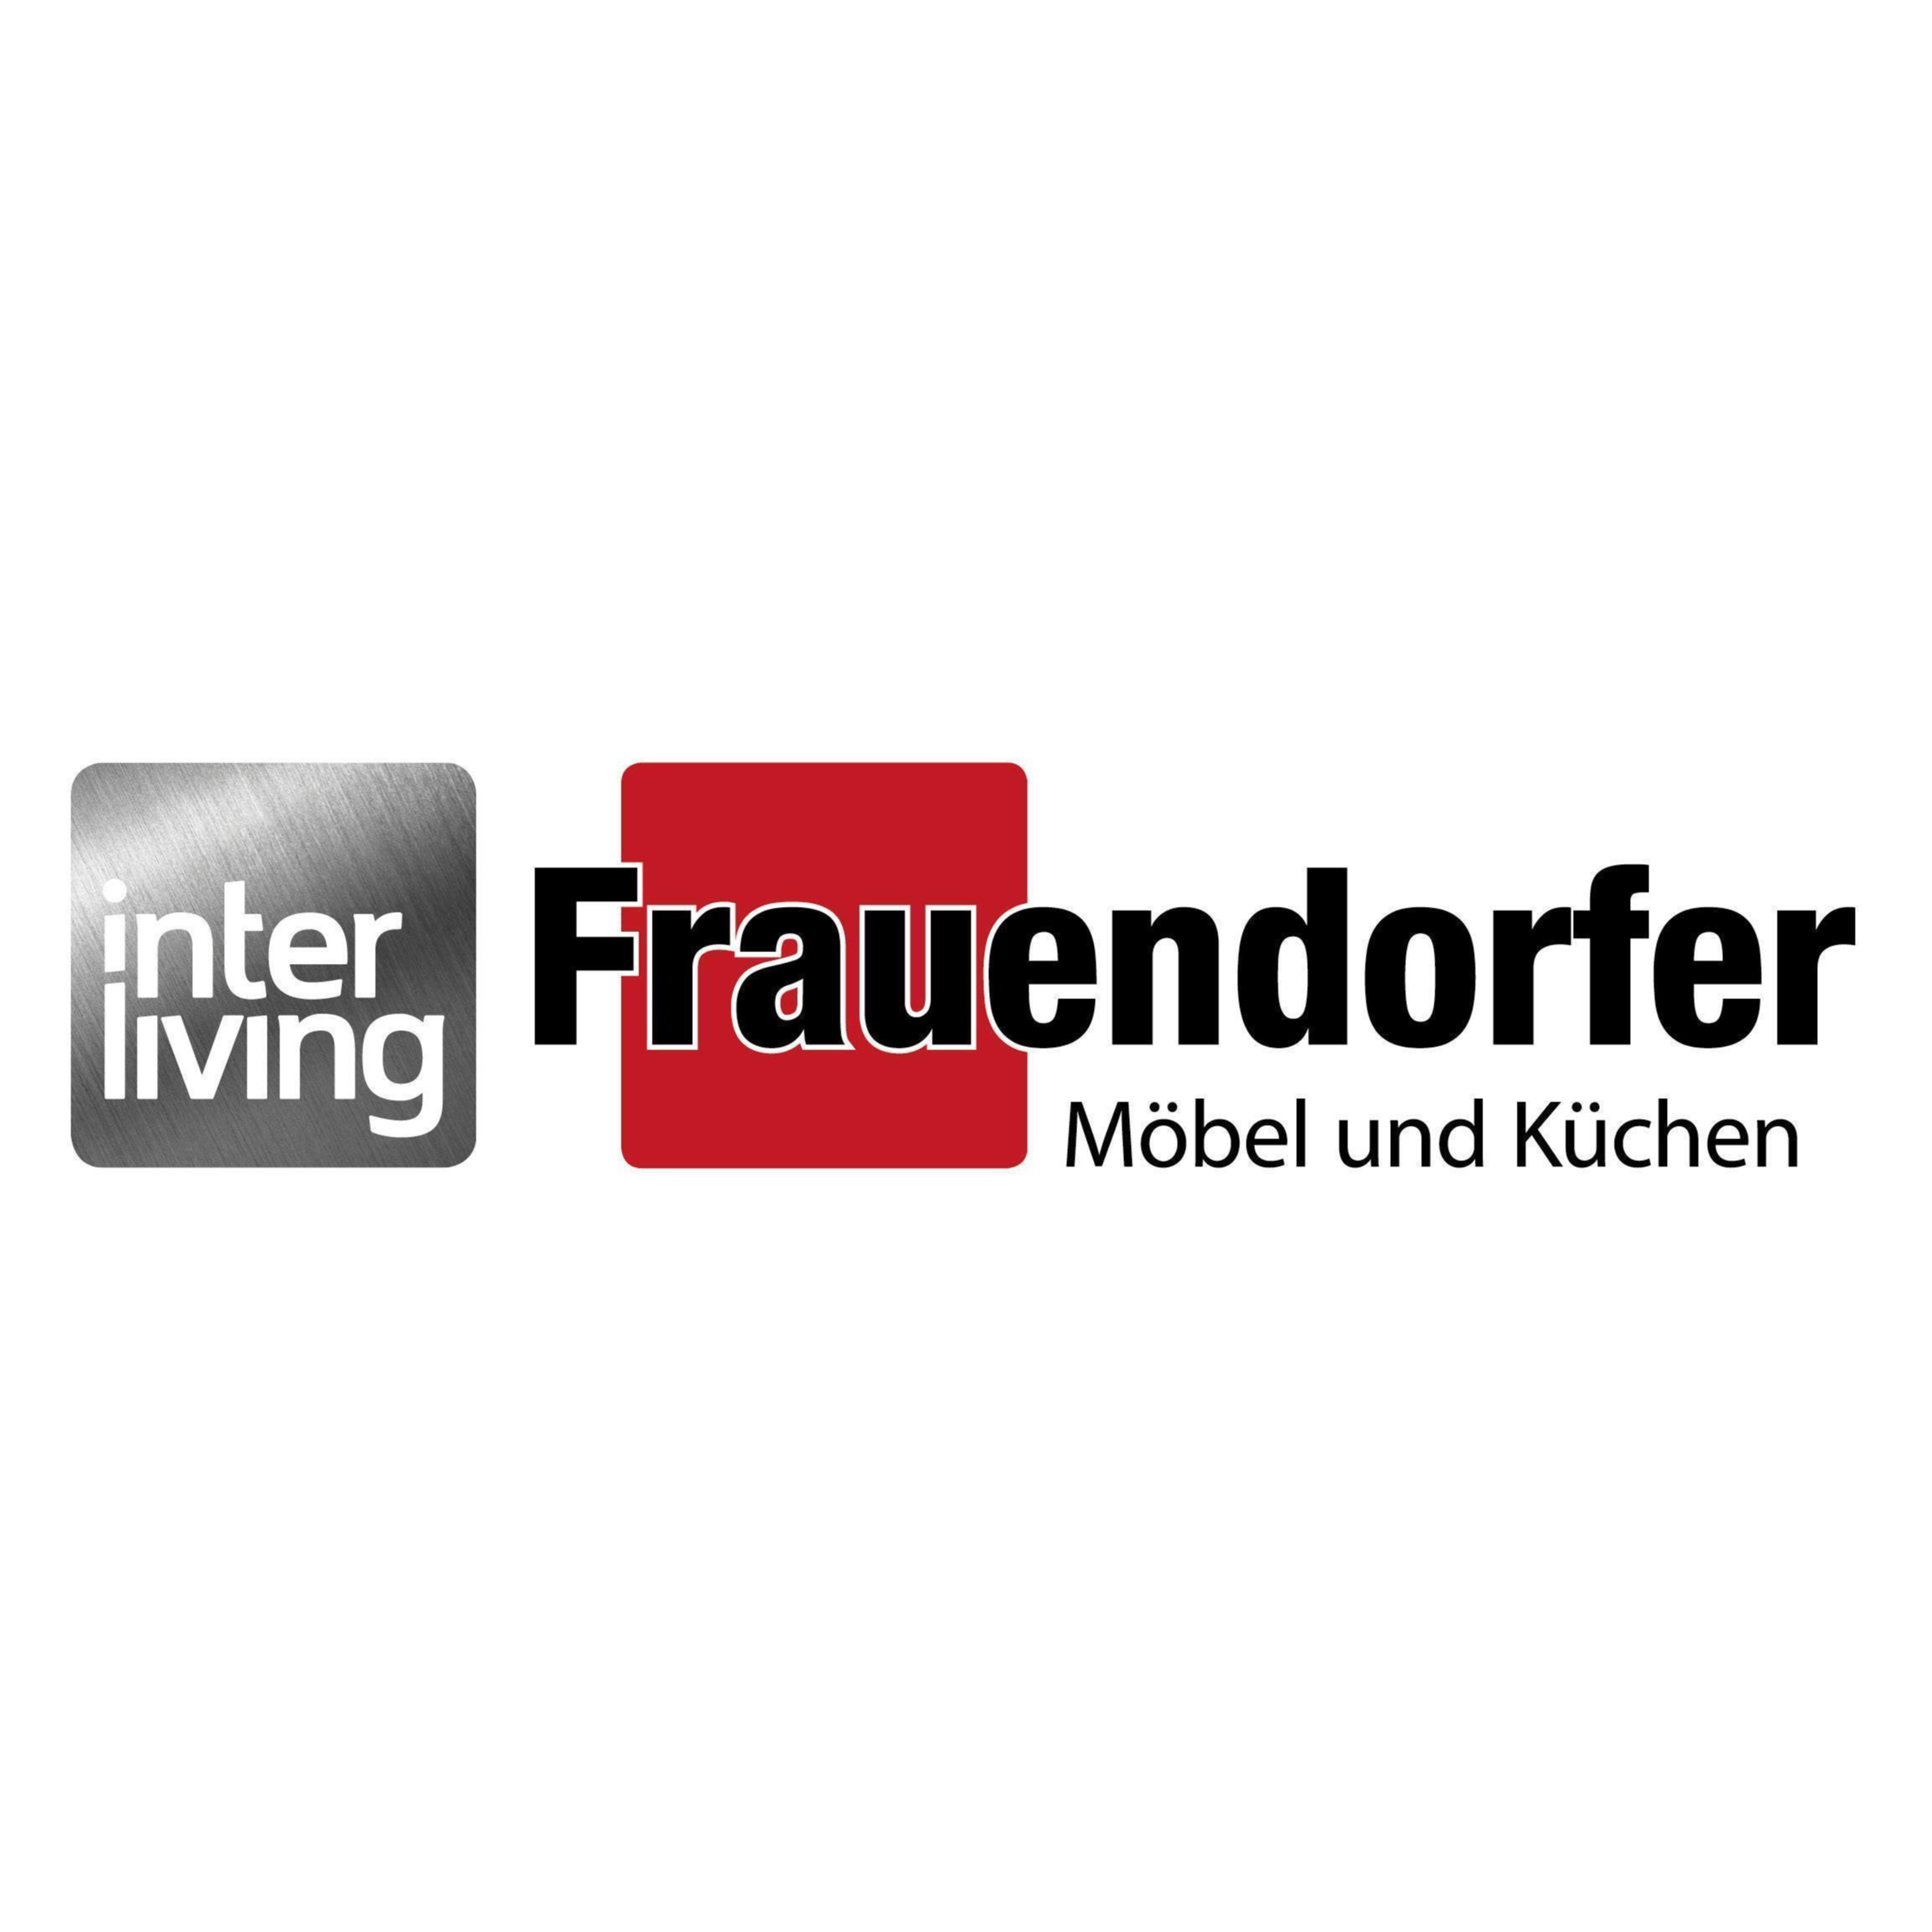 Frauendorfer Möbel und Küchen in Amberg in der Oberpfalz - Logo